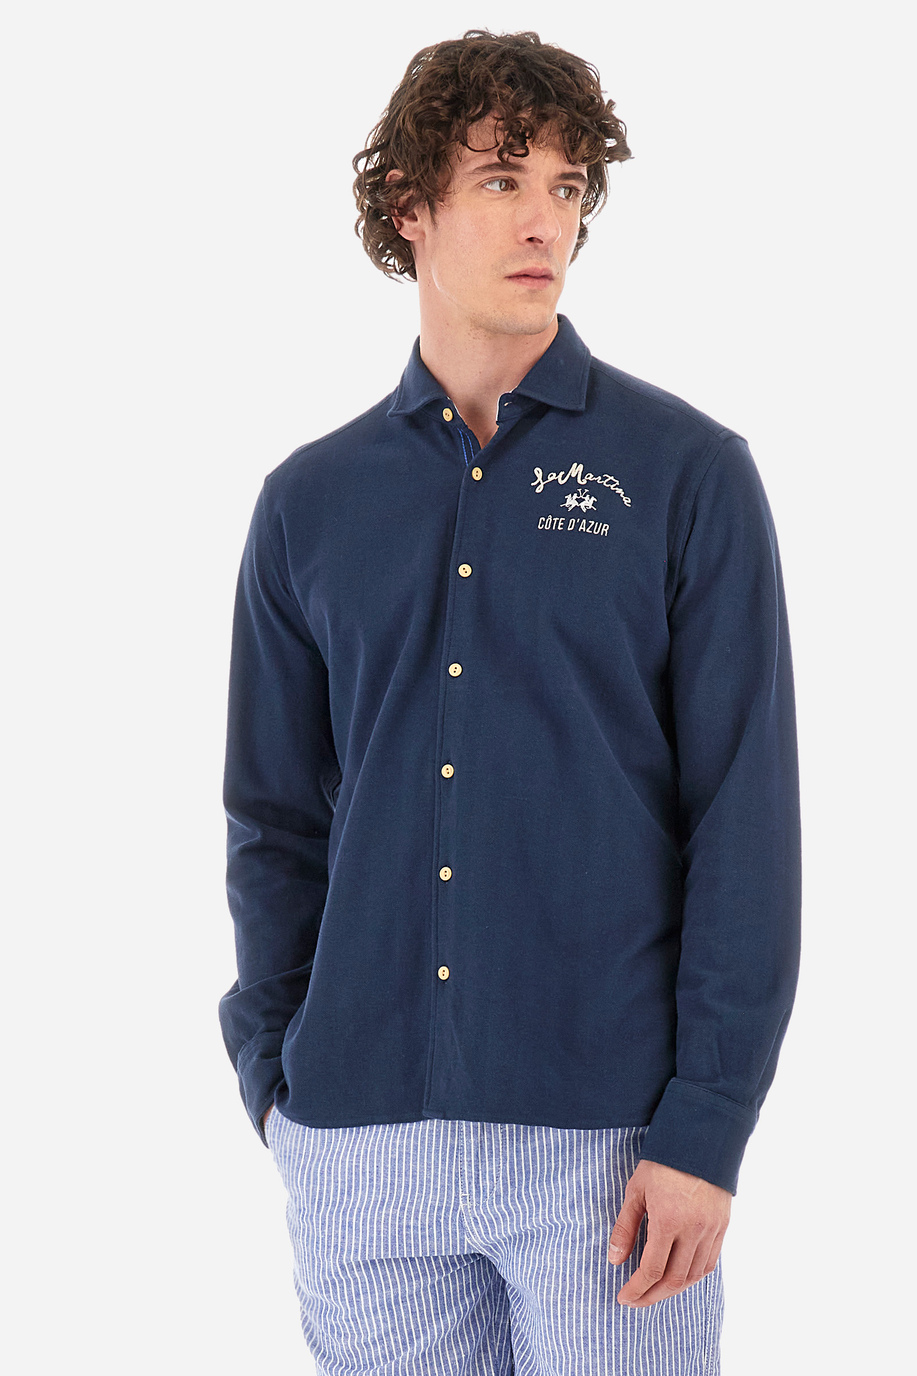 Chemise coupe classique en jersey de coton - Innocent - Chemises | La Martina - Official Online Shop